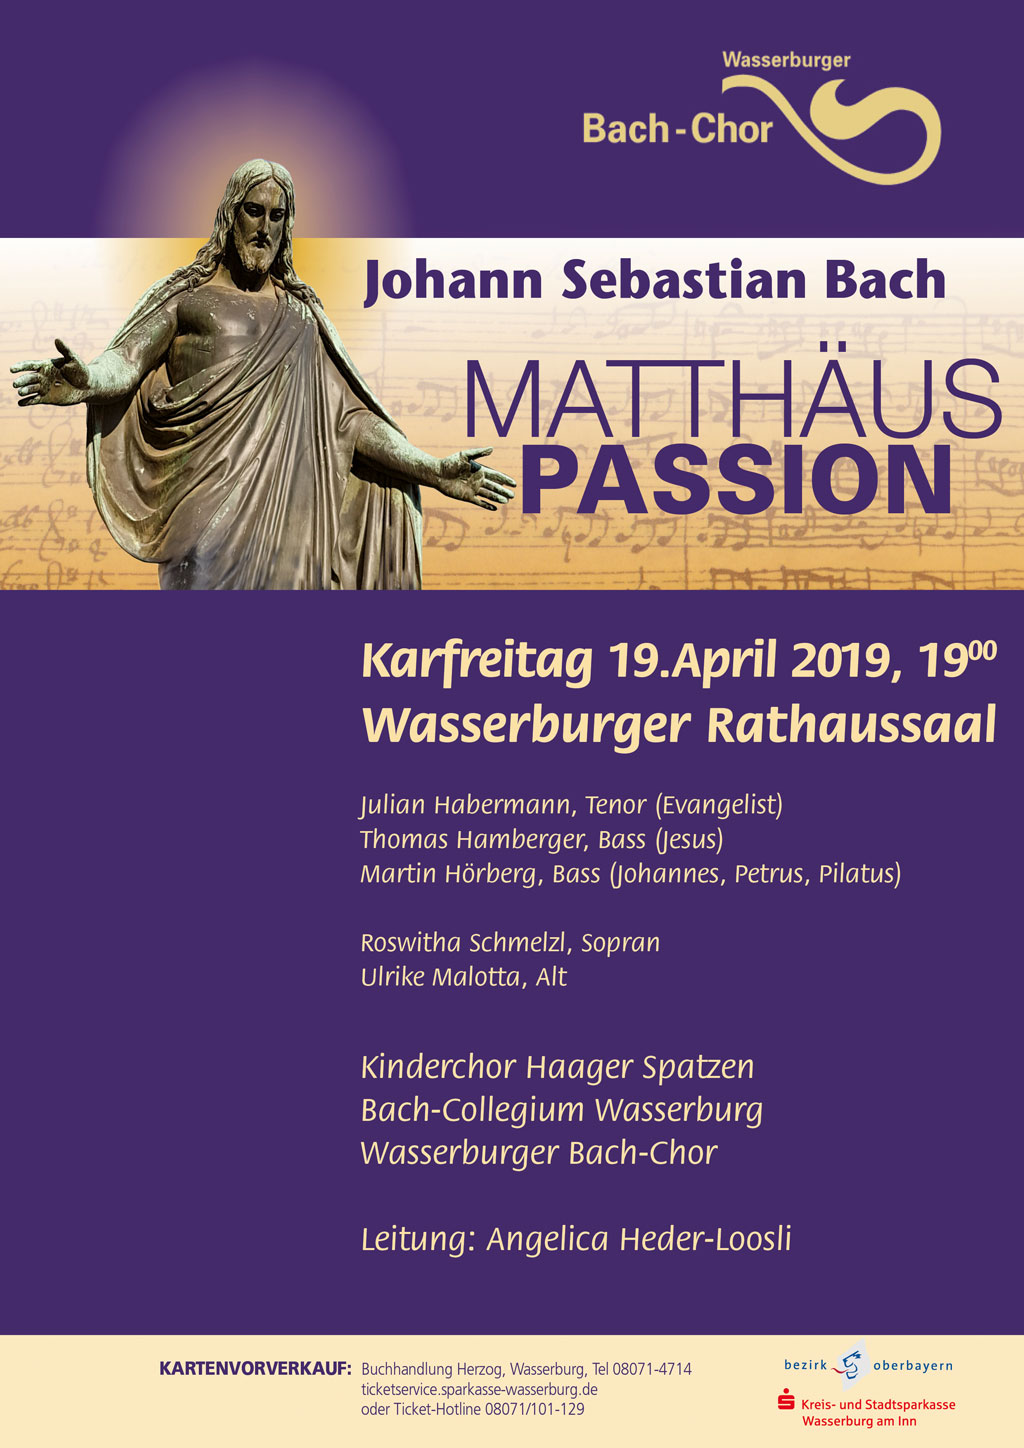 Matthaeus Passion Plakat 2019 -Wasserburger Bach-Chor